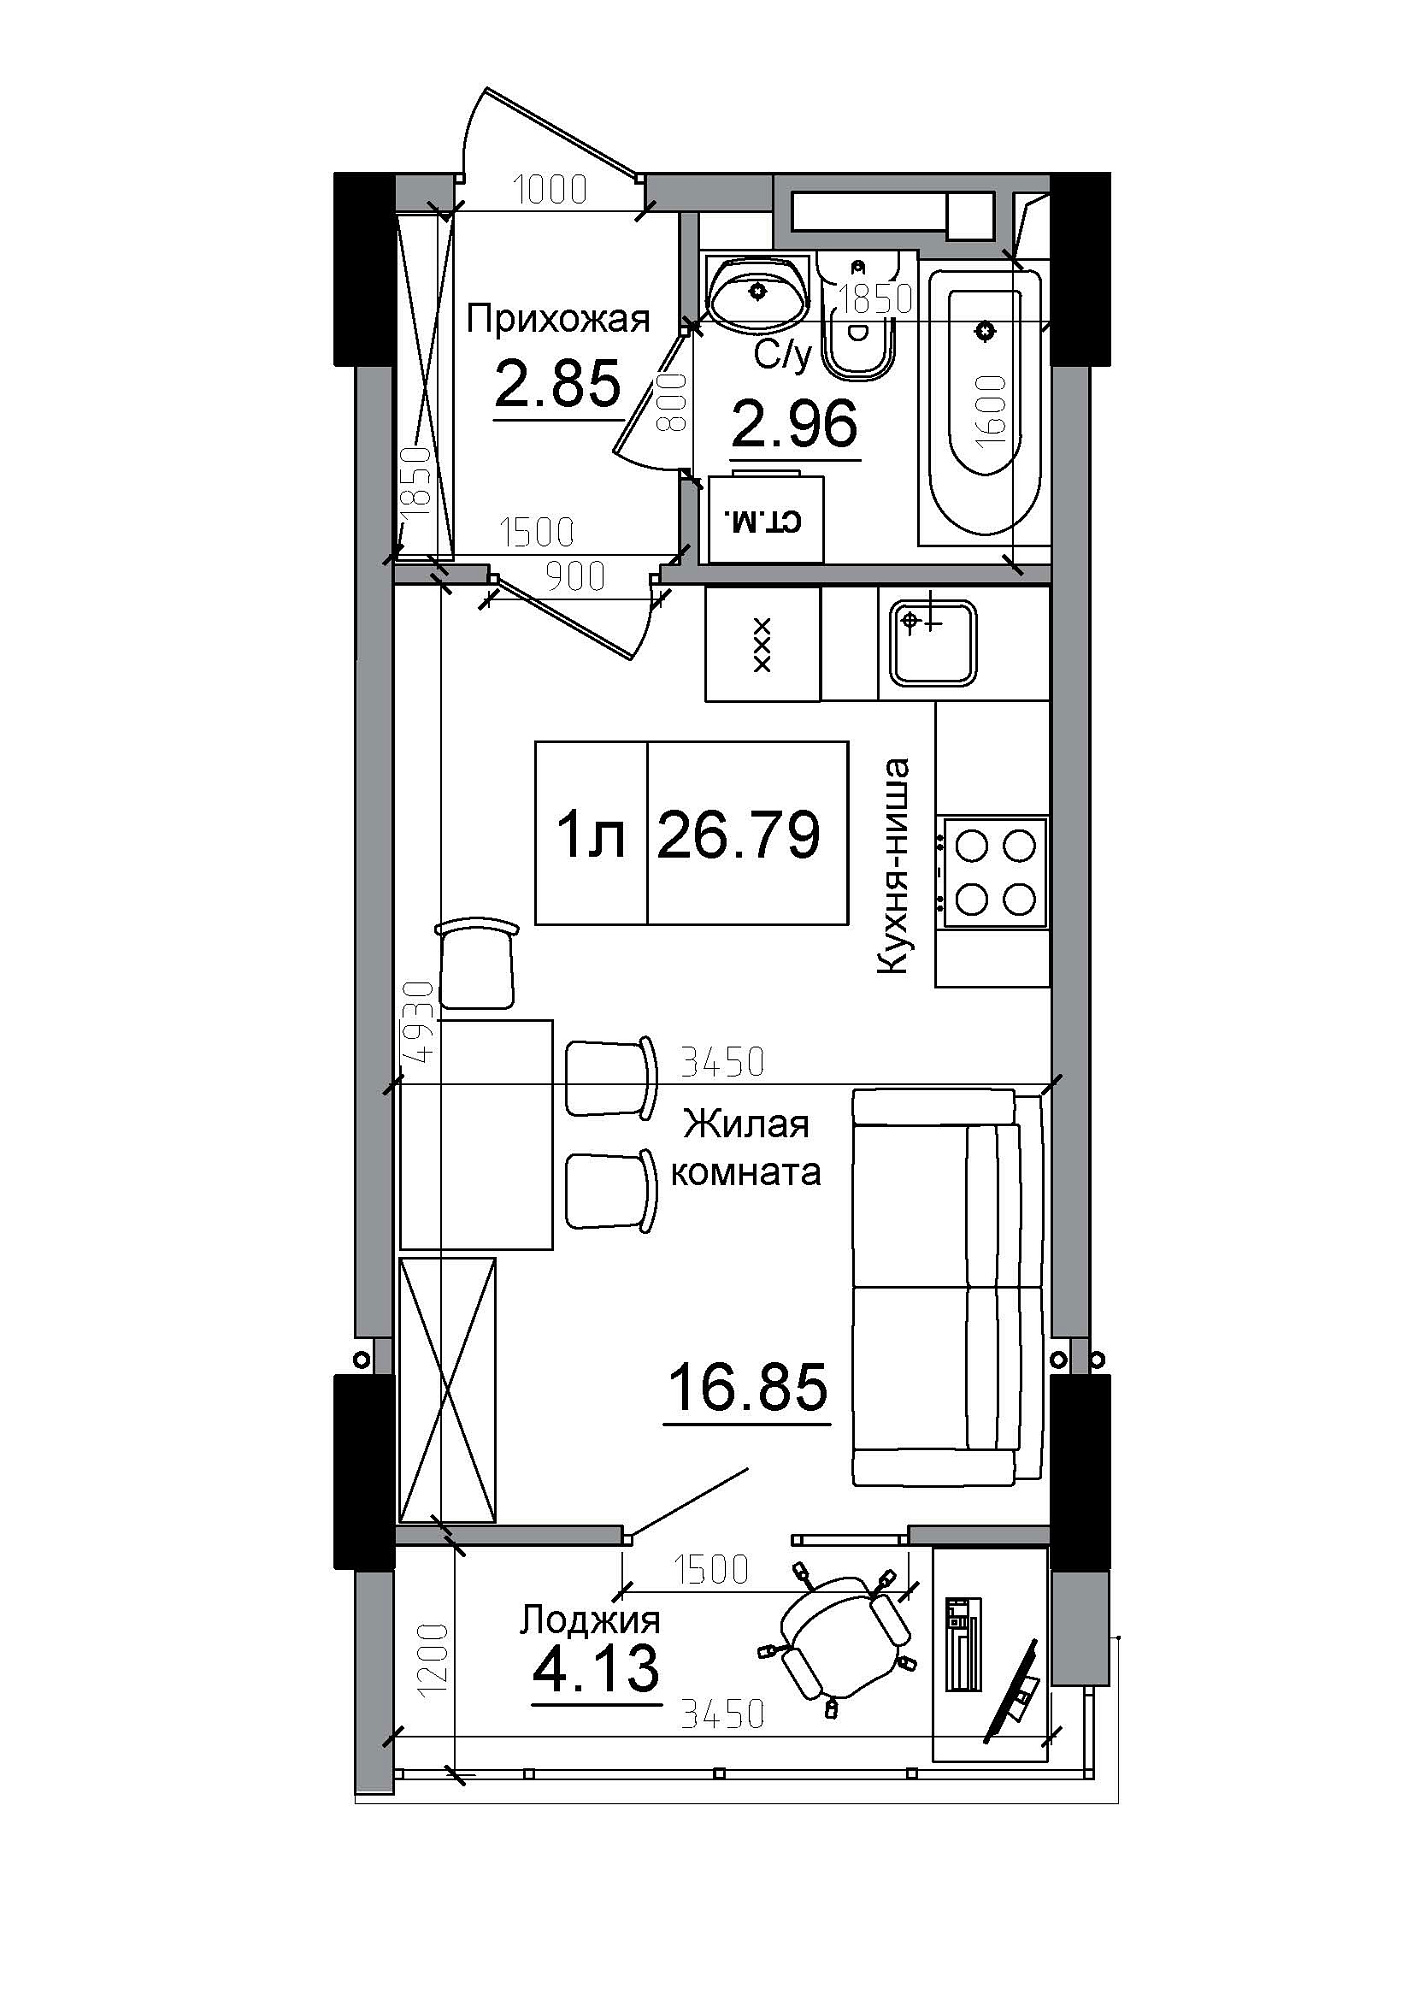 Планування Smart-квартира площею 26.79м2, AB-12-06/00014.